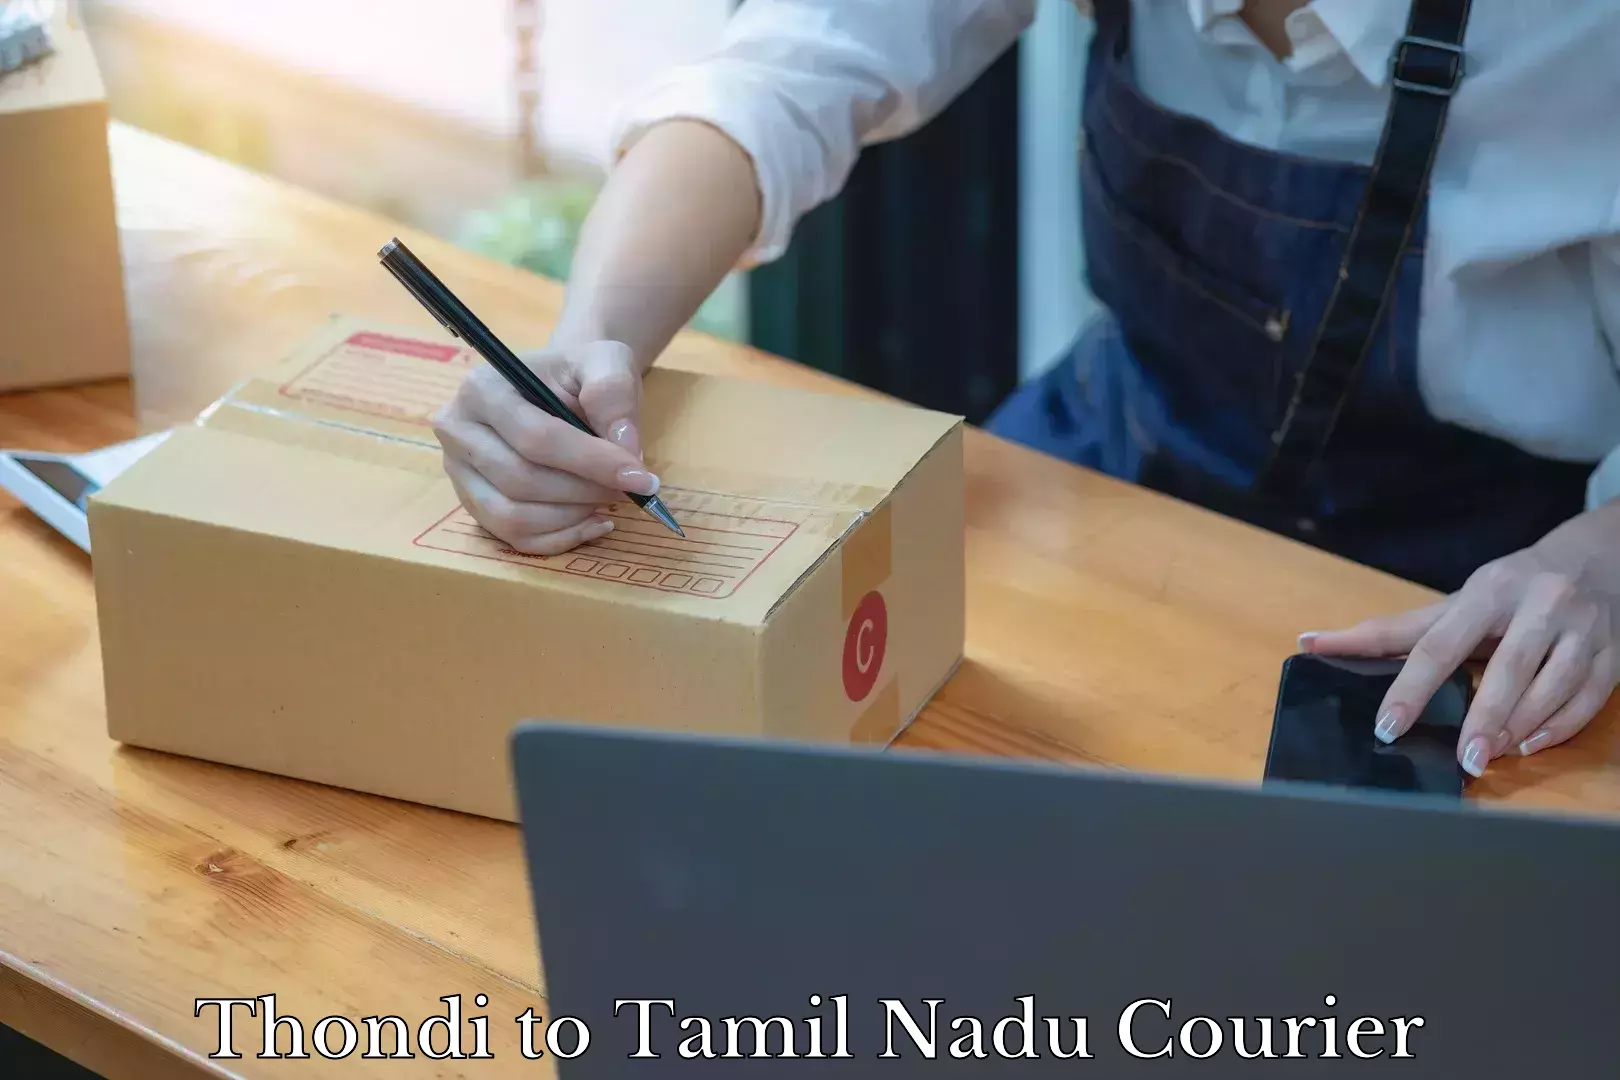 Furniture transport and logistics Thondi to Tamil Nadu